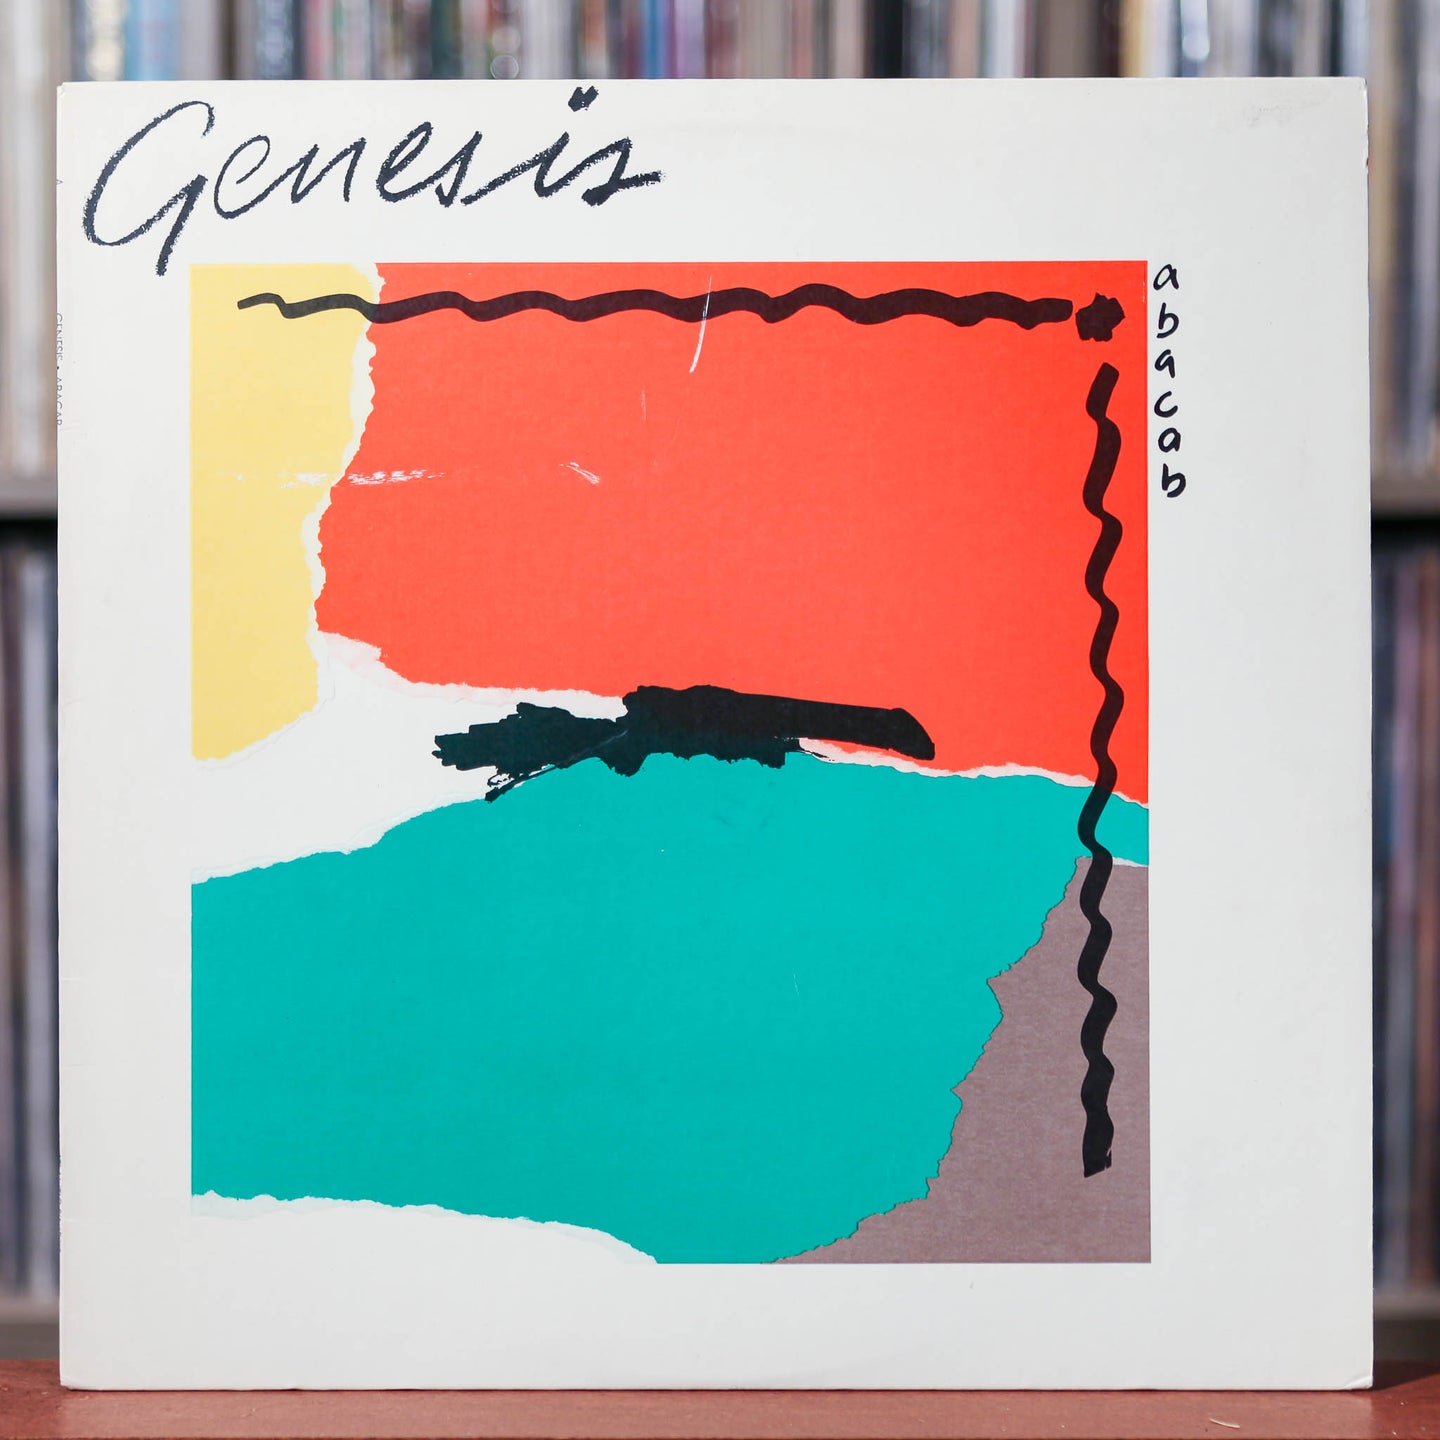 Genesis - Abacab - 1981 Atlantic, VG+/VG+